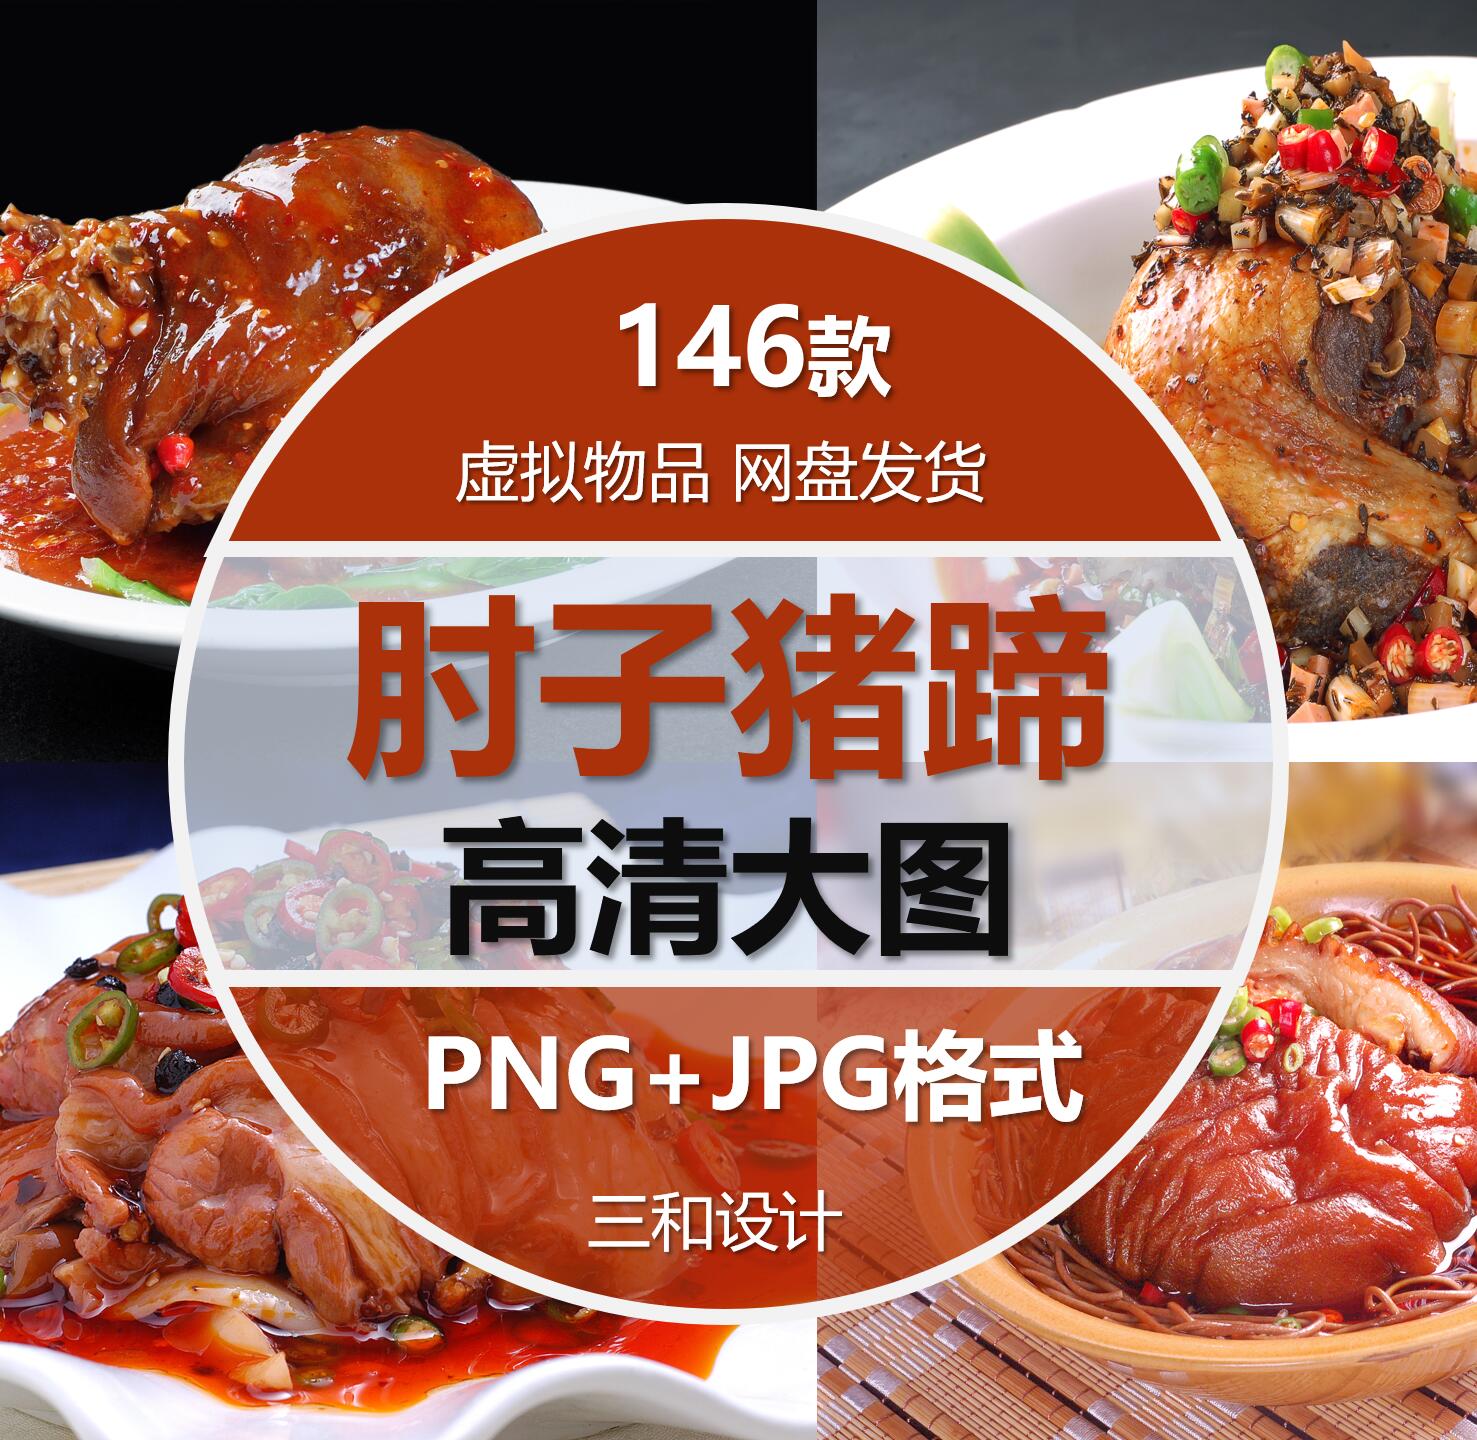 酱肘子猪蹄美食美团外卖菜单海报宣传单设计素材高清JPG图片